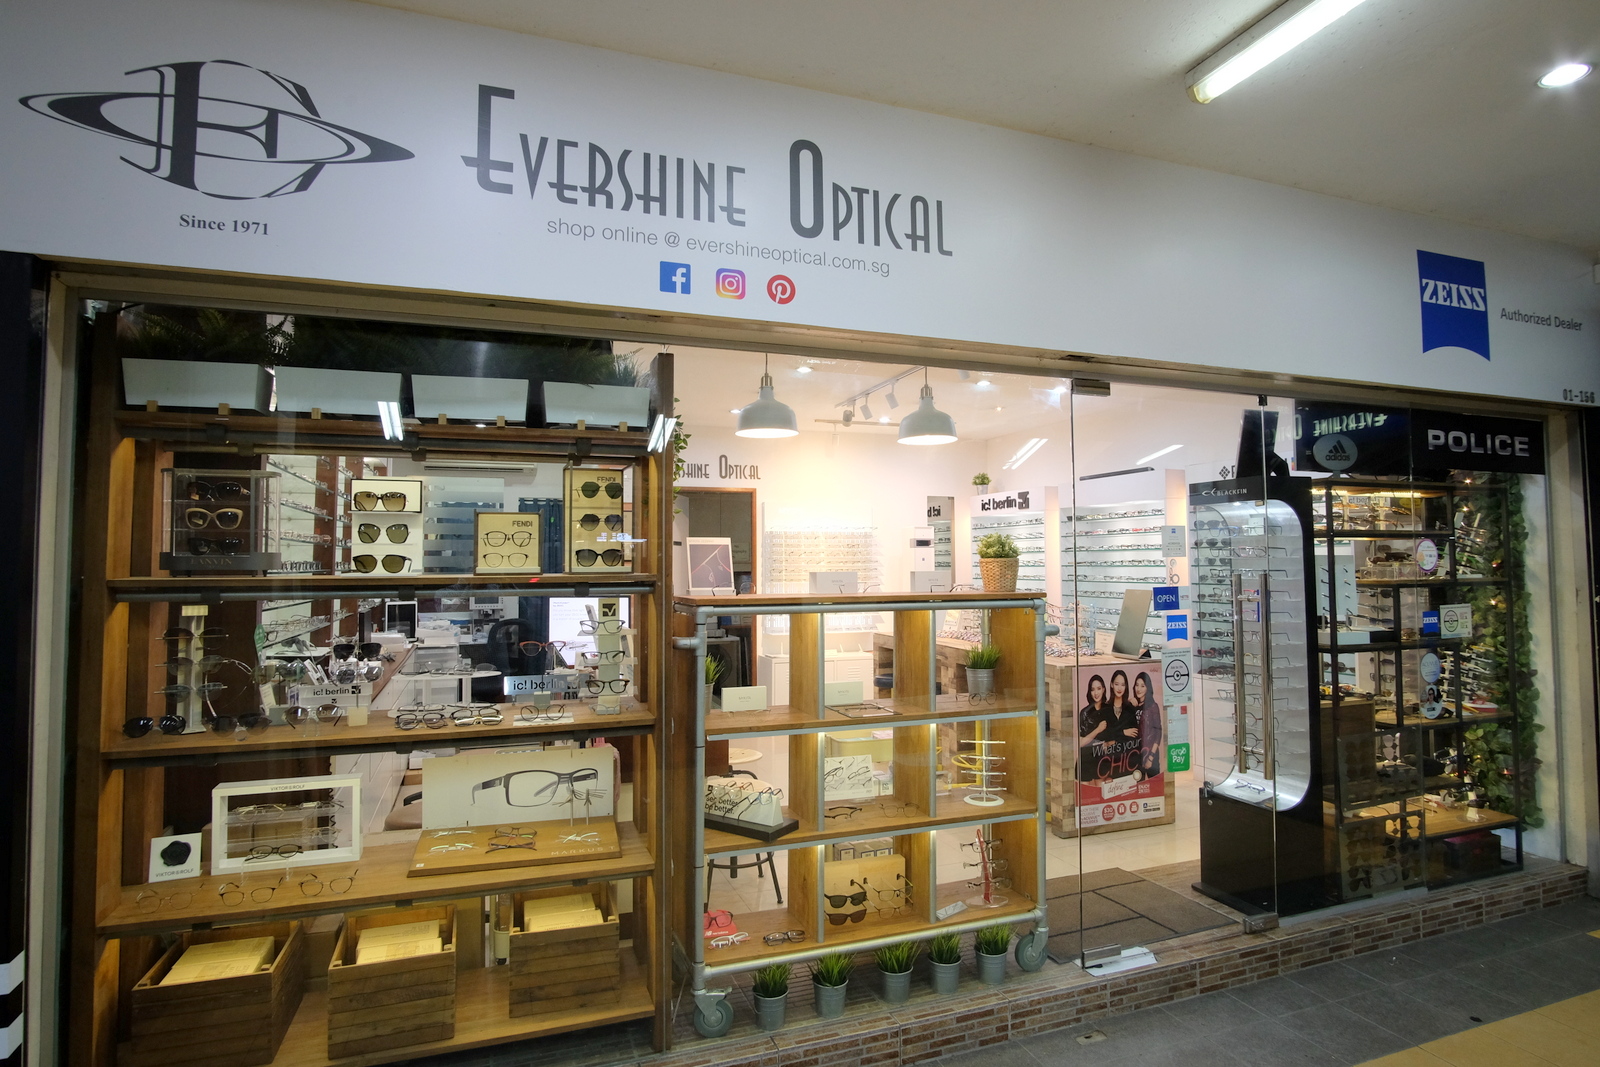 evershineoptical shop front